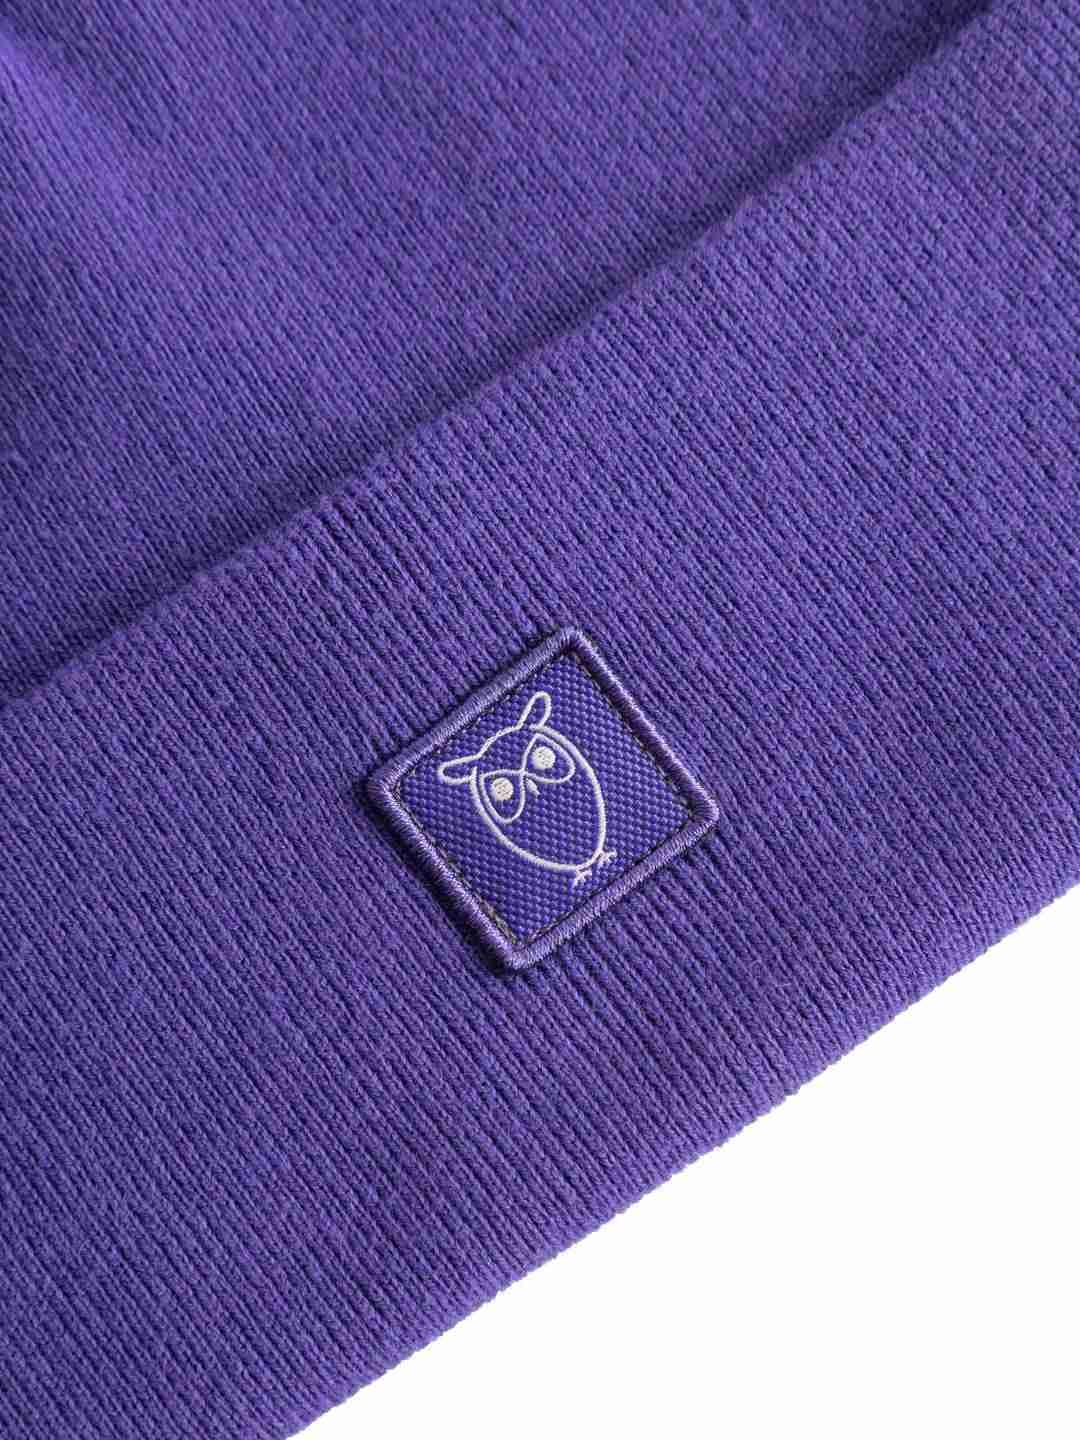 Beanie Knitted rib deep purple von KnowledgeCotton Apparel